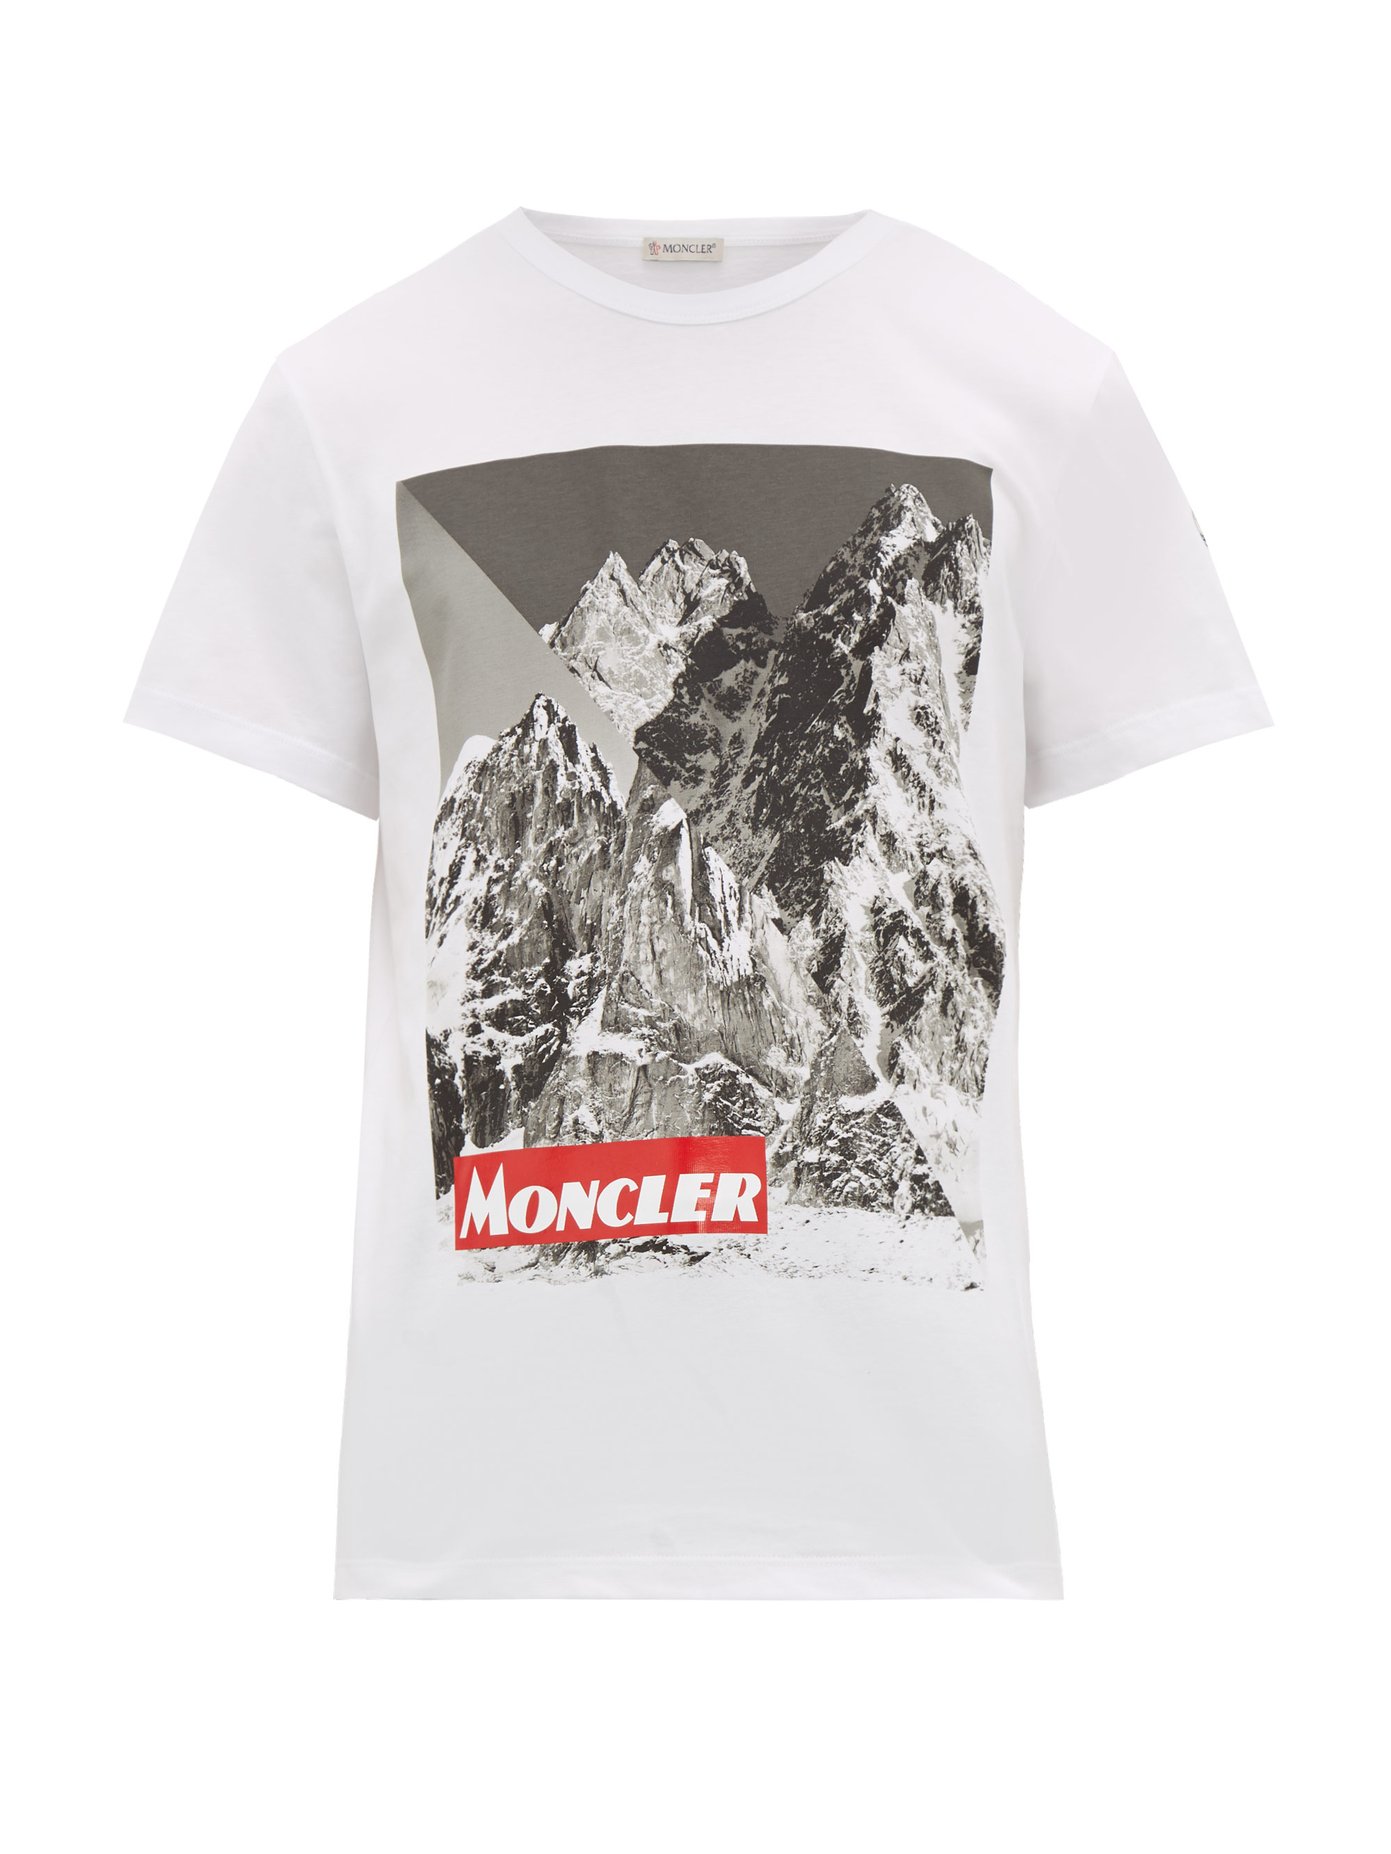 moncler t-shirt sale